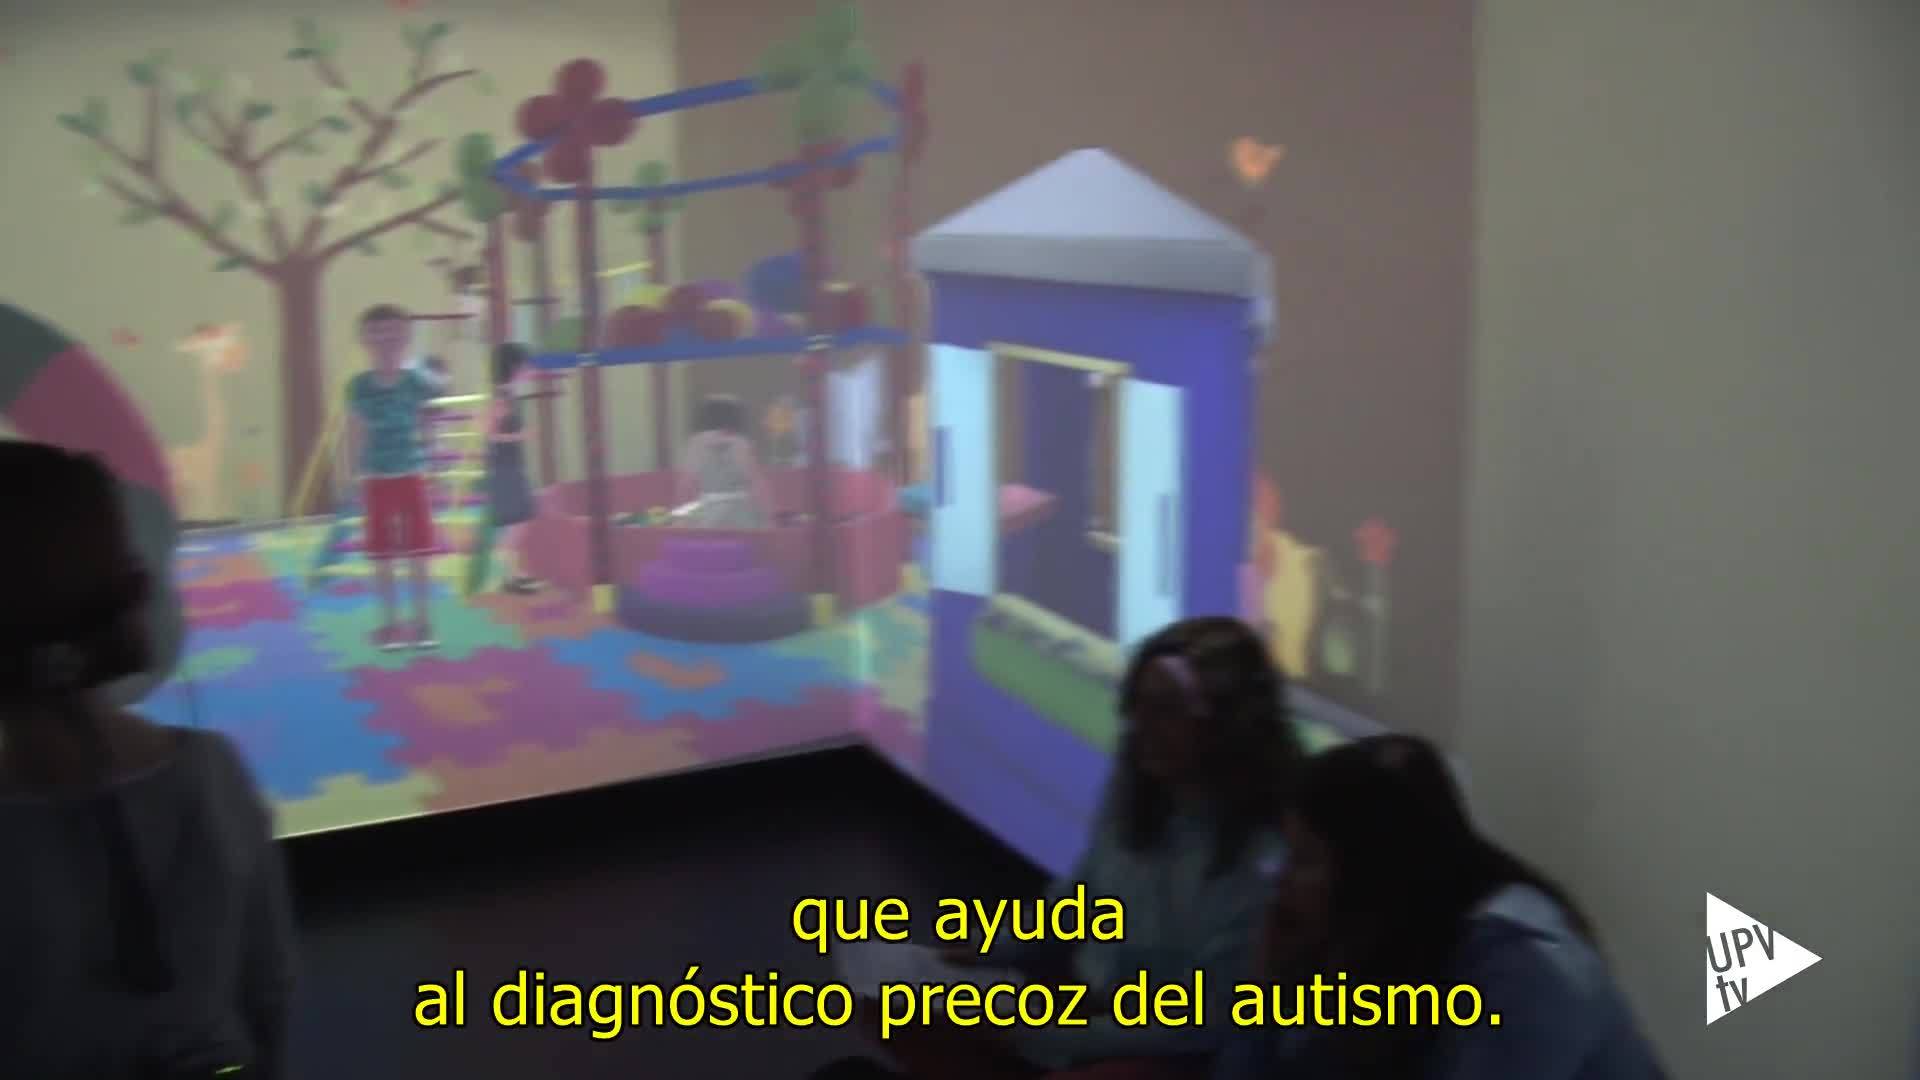 02-04-2019 Inteligencia artificial y realidad virtual para un mejor diagnóstico y tratamiento del autismo